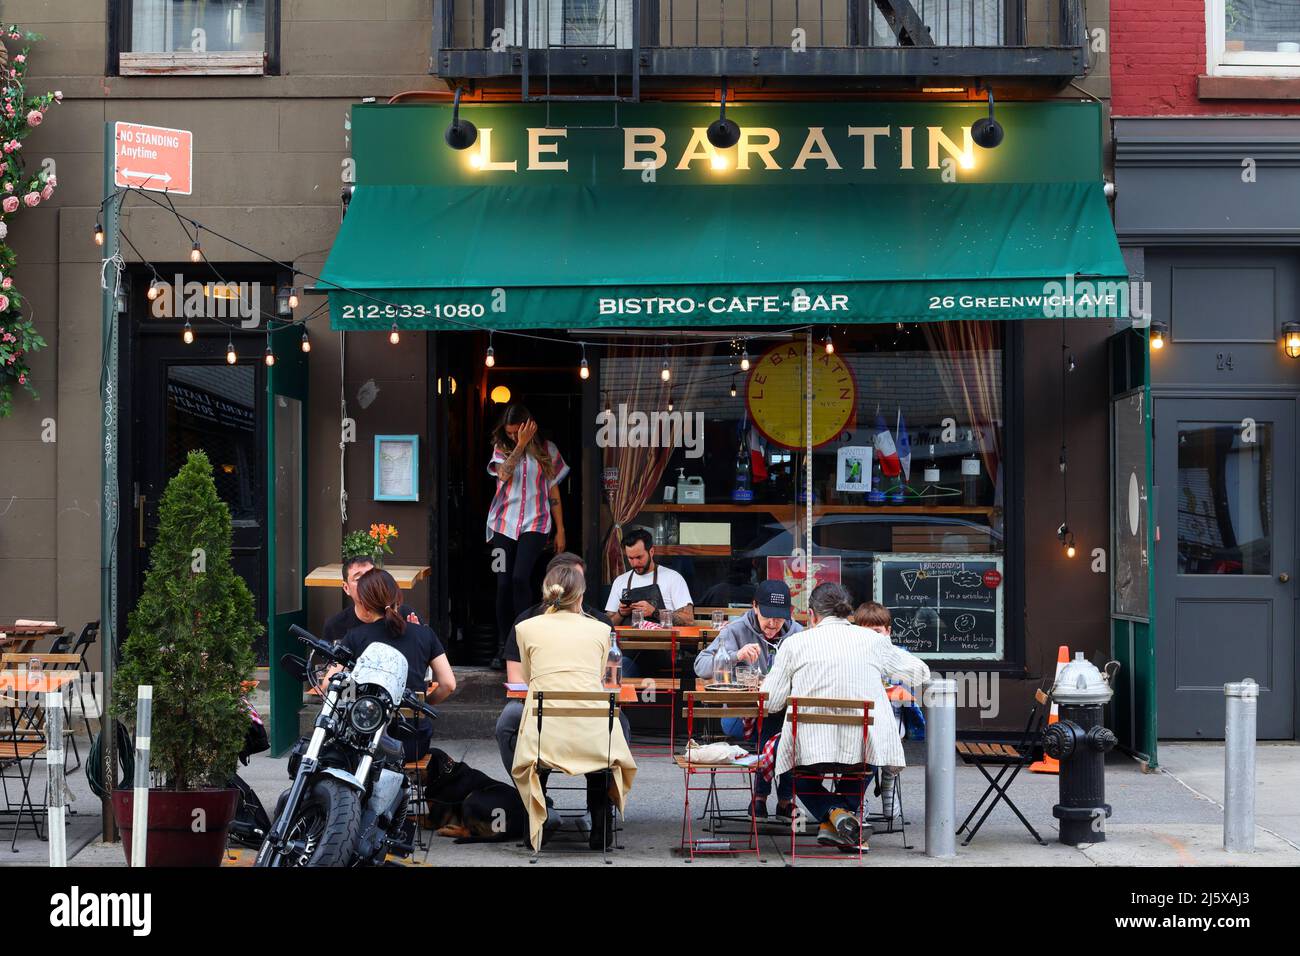 Le Baratin, 26 Greenwich Ave, New York, NYC Foto von einem französischen Restaurant im Stadtteil Greenwich Village in Manhattan. Stockfoto